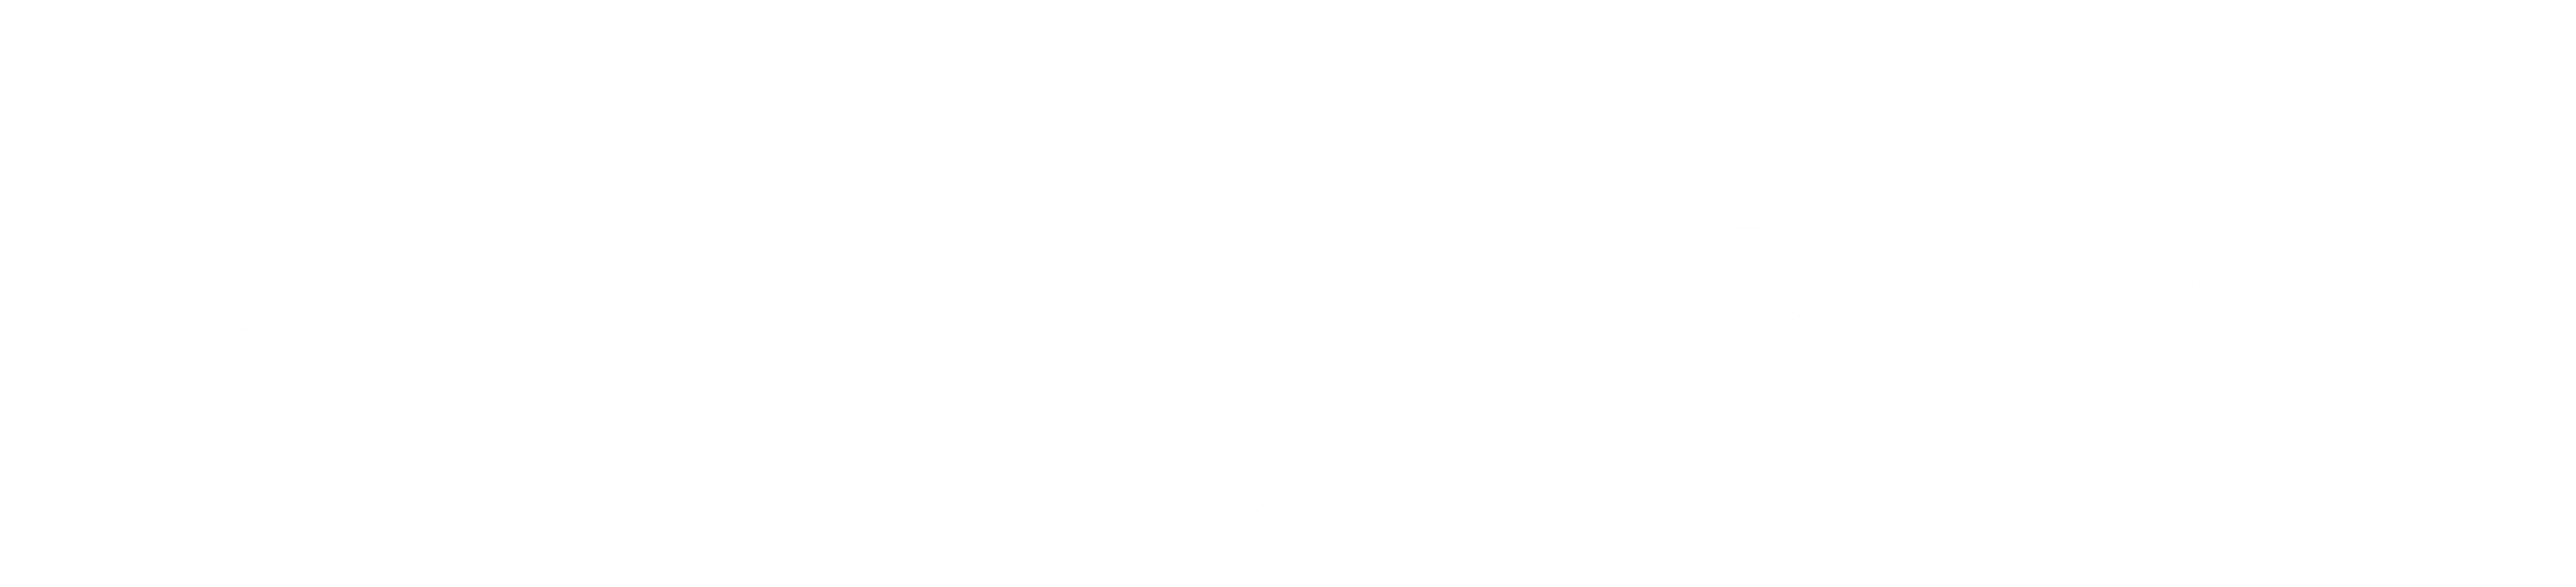 TugVision365 logo wit